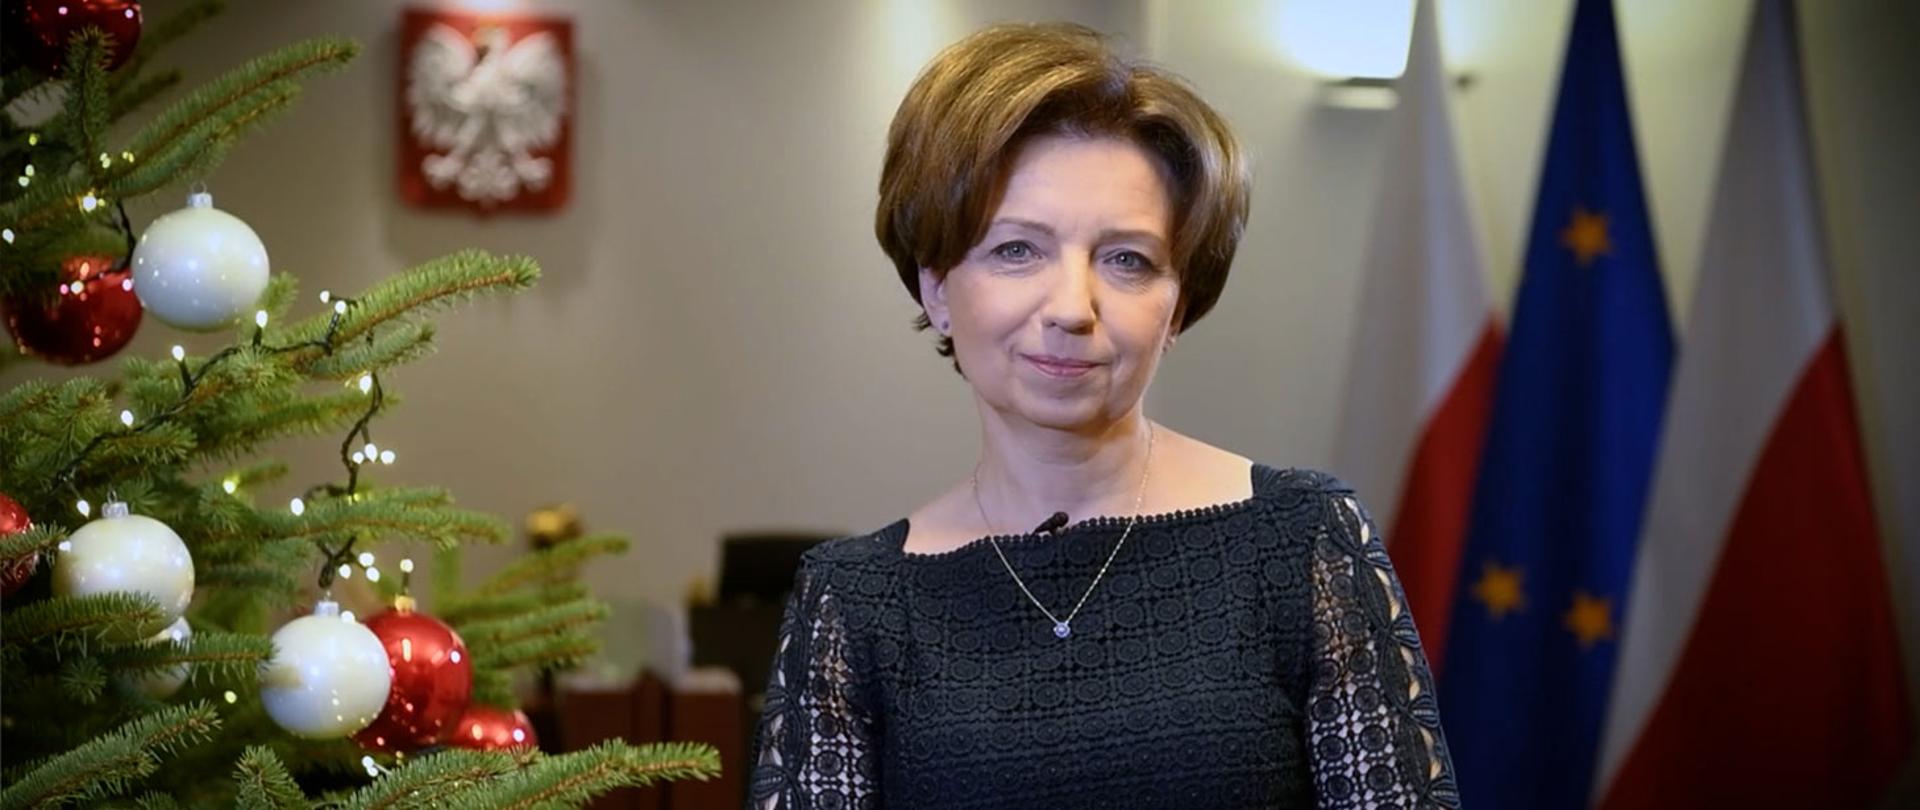 Na zdjęciu minister Marlena Maląg w swoim gabinecie przy choince